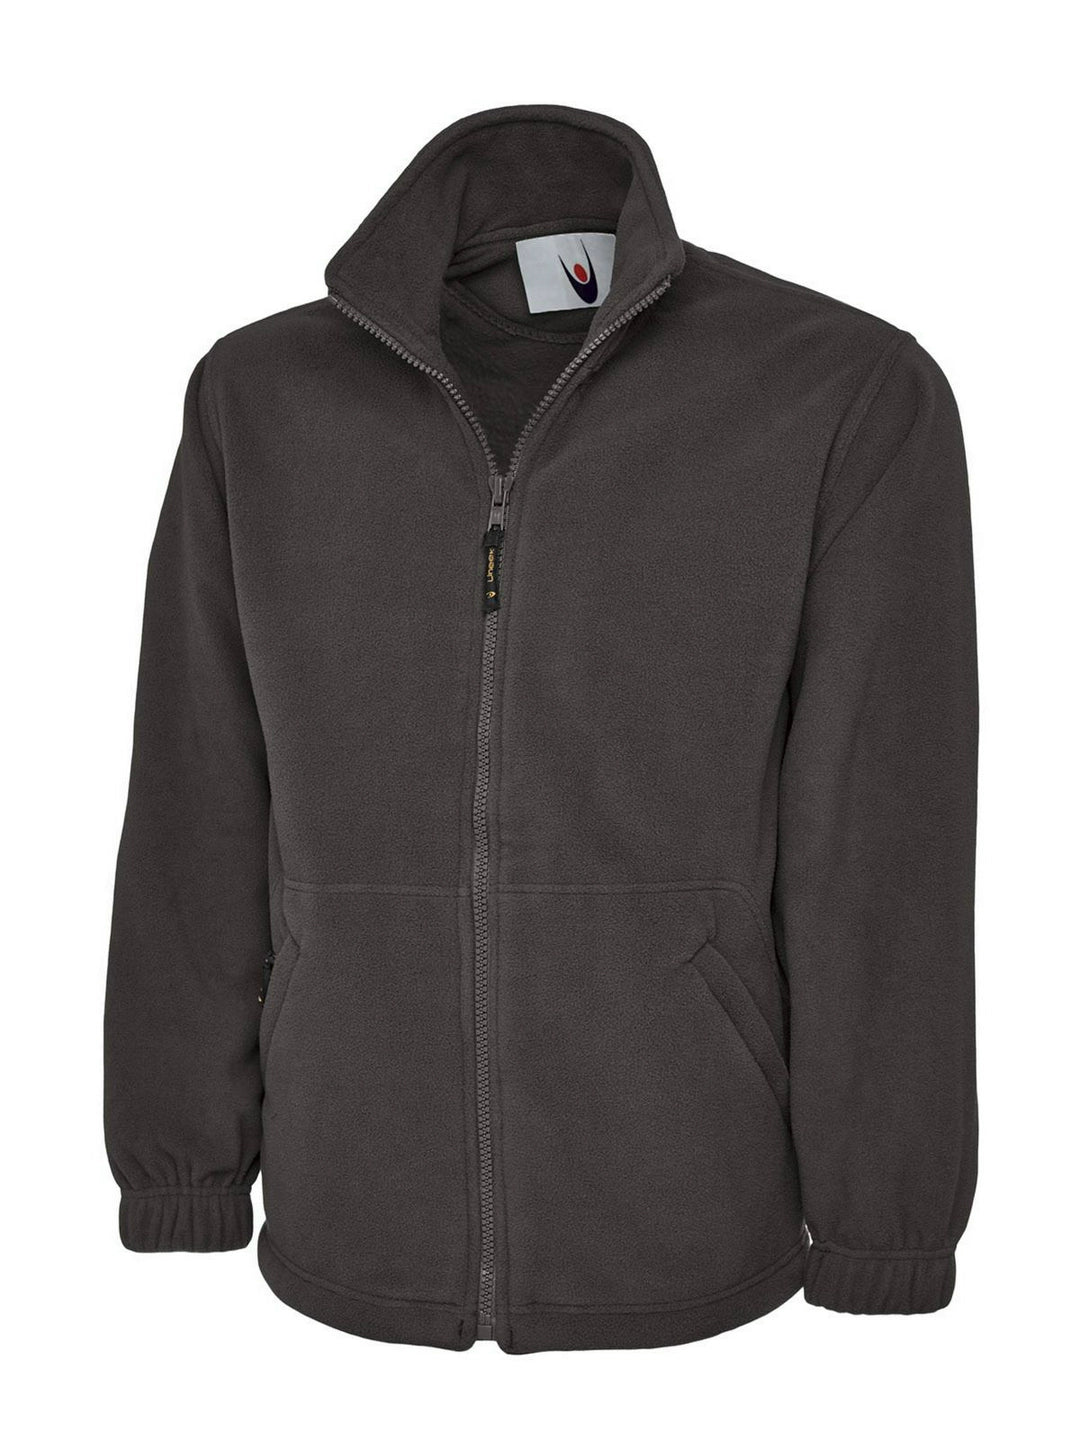 Uneek Clothing UC604 Classic Full Zip Micro Fleece Jacket - COOZO